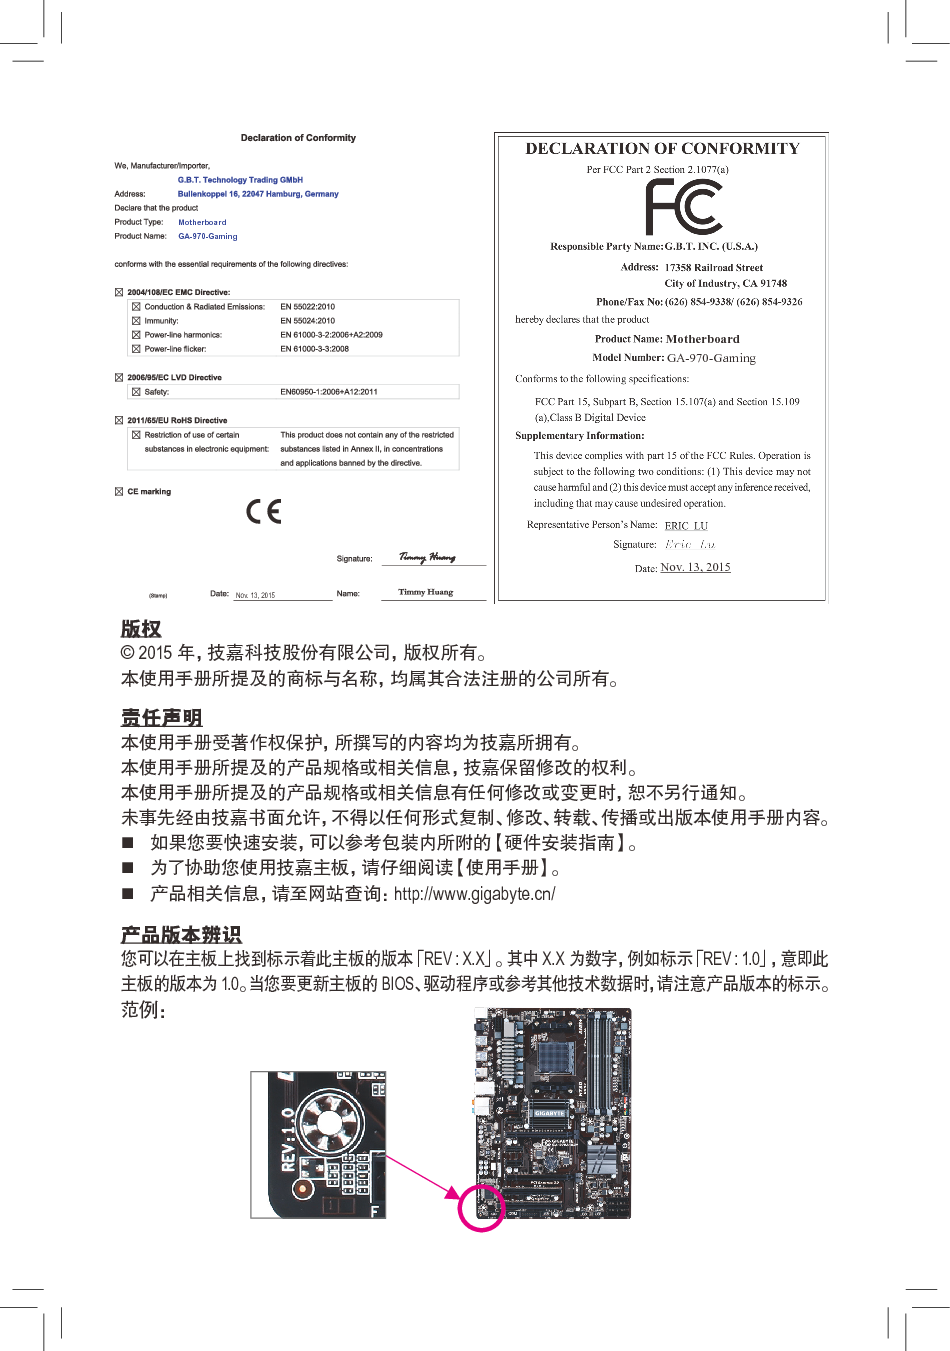 技嘉 Gigabyte GA-970-GAMING 1001版 使用手册 第1页